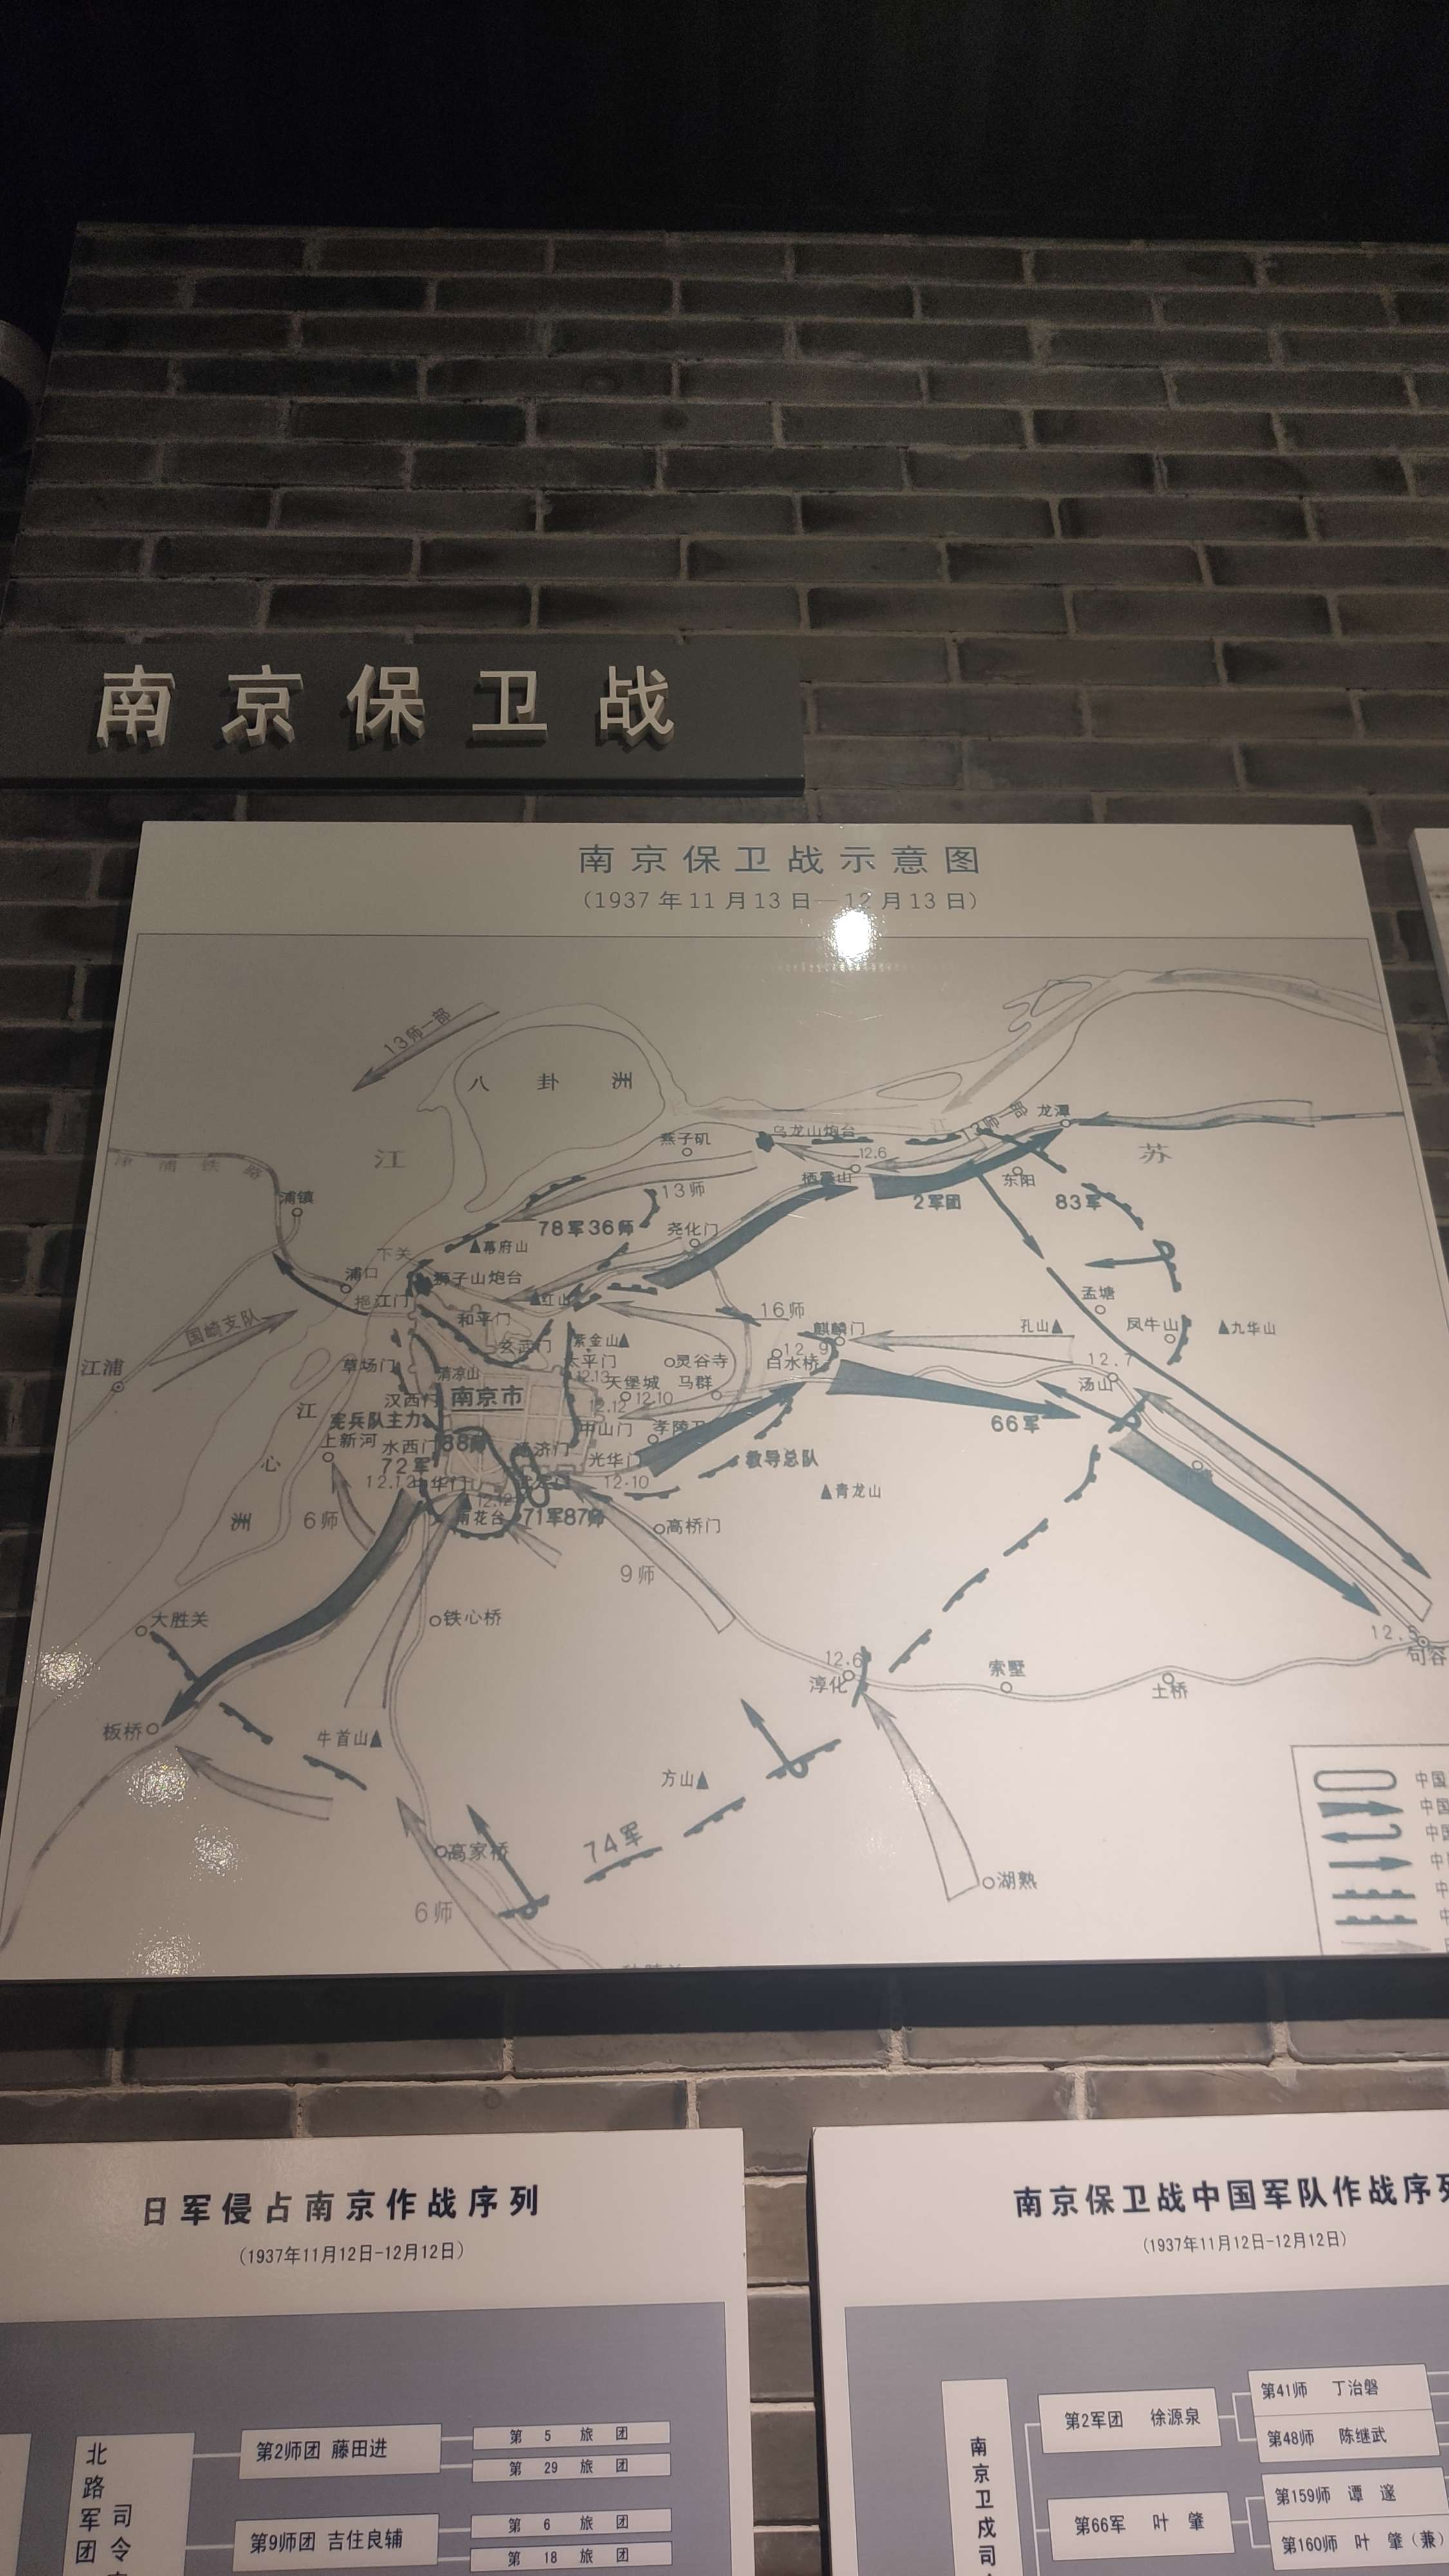 金牛座棋格格 的想法: 在句容新四军纪念馆看到的南京保卫战资料